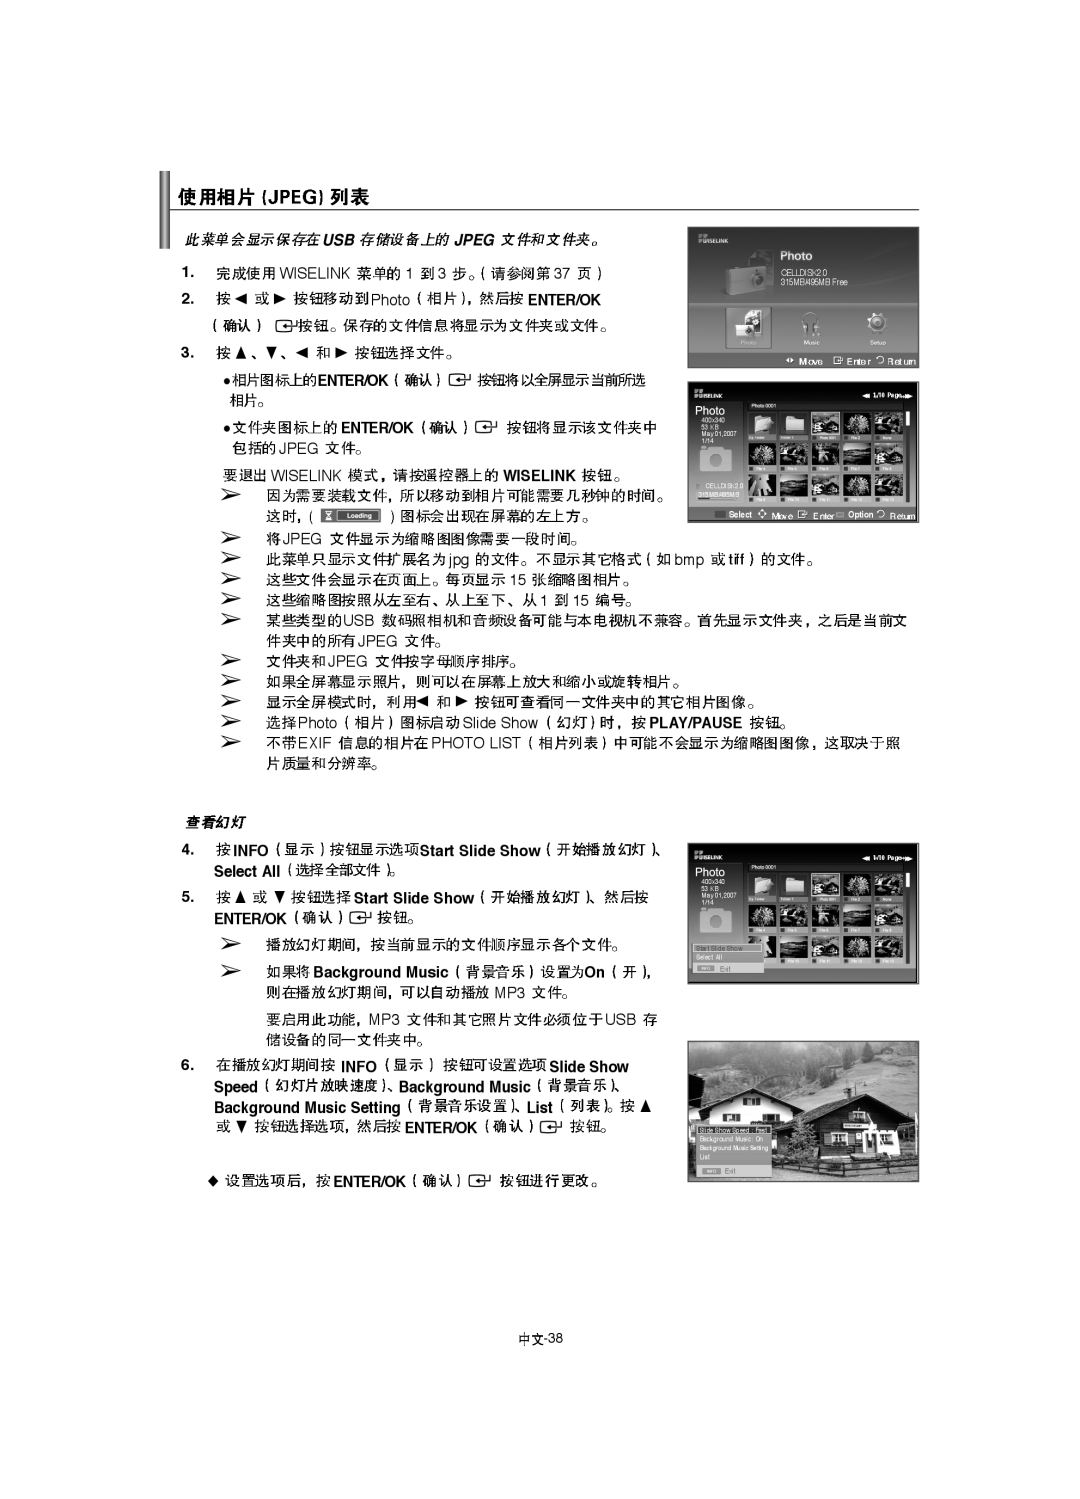 Samsung LA46F8, LA52F8, LA40F8 manual Usb Jpeg, Photo List 